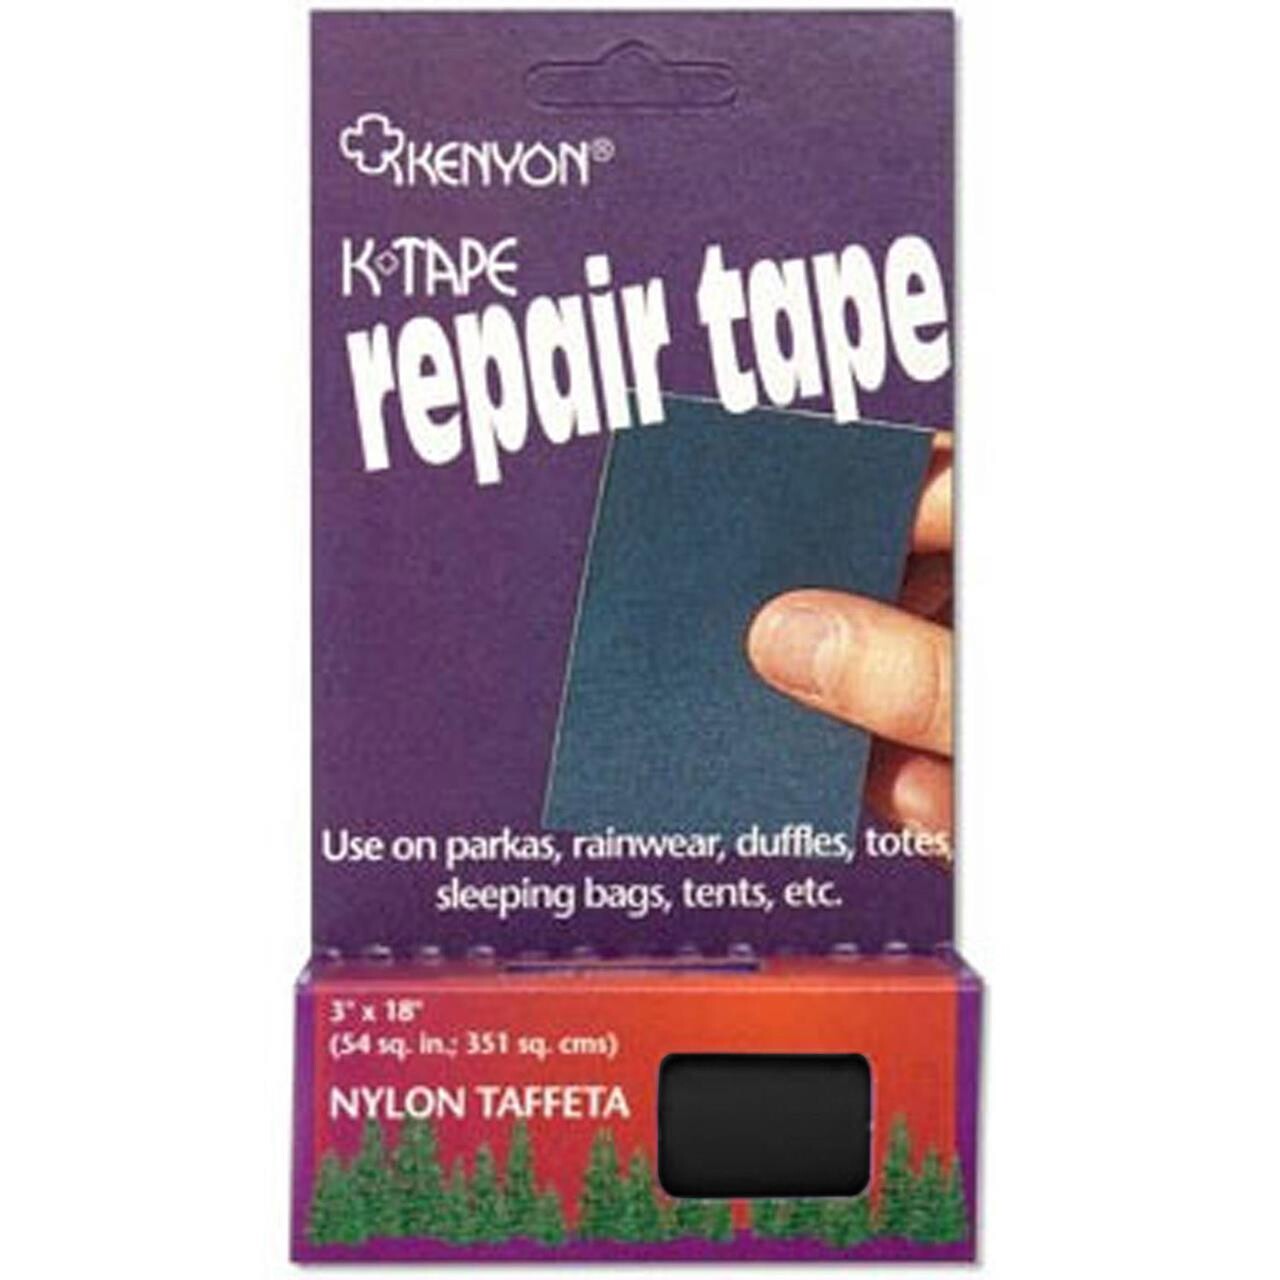 Kenyon Repair tape Ripstop 3x18" (Sort (BLACK))